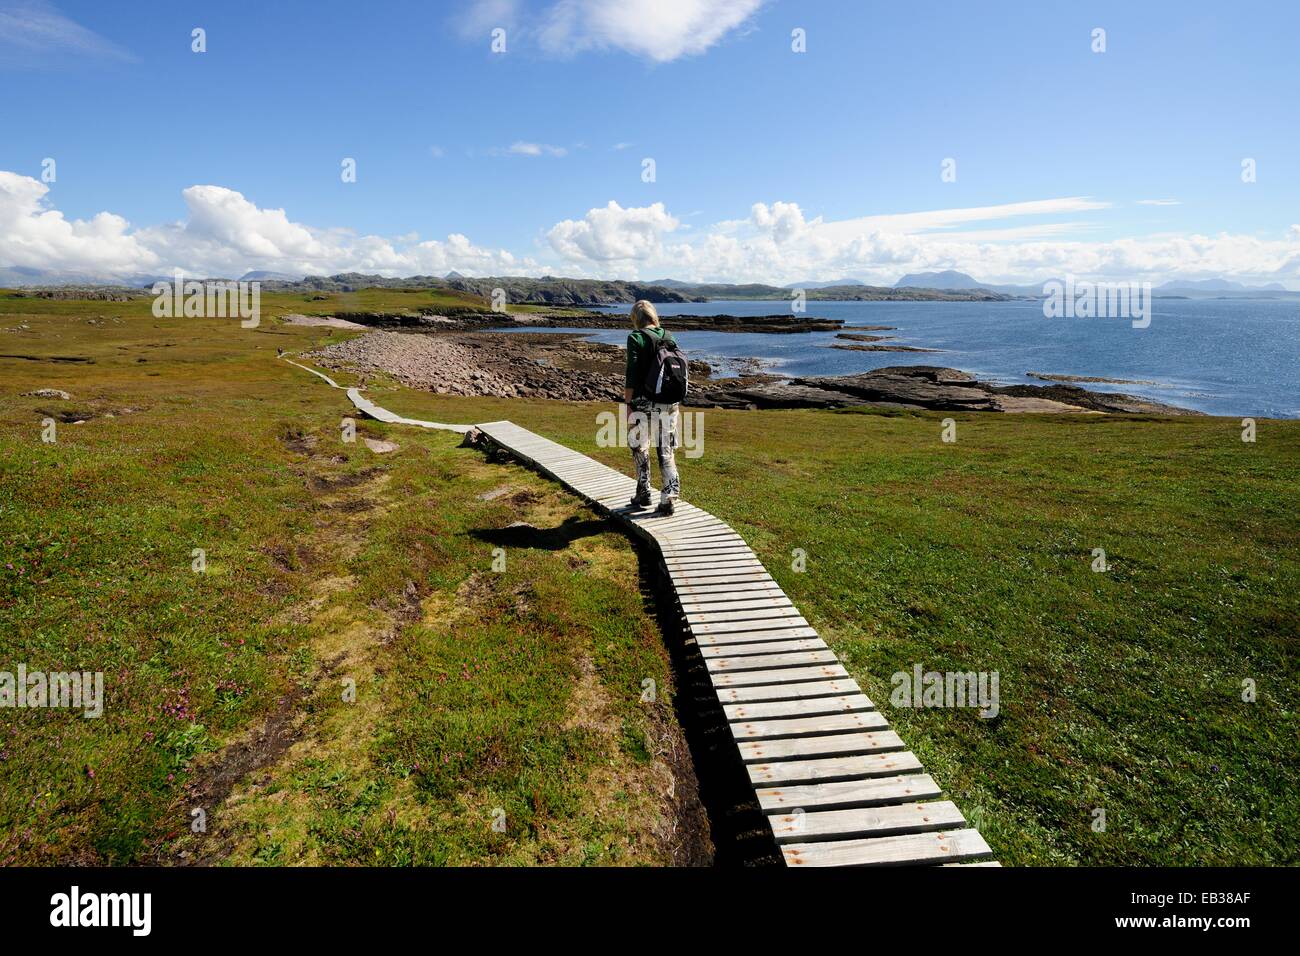 Gli escursionisti a piedi su una passerella in legno che attraversa zone paludose intorno all'isola di Handa, Scourie, Scozia Foto Stock